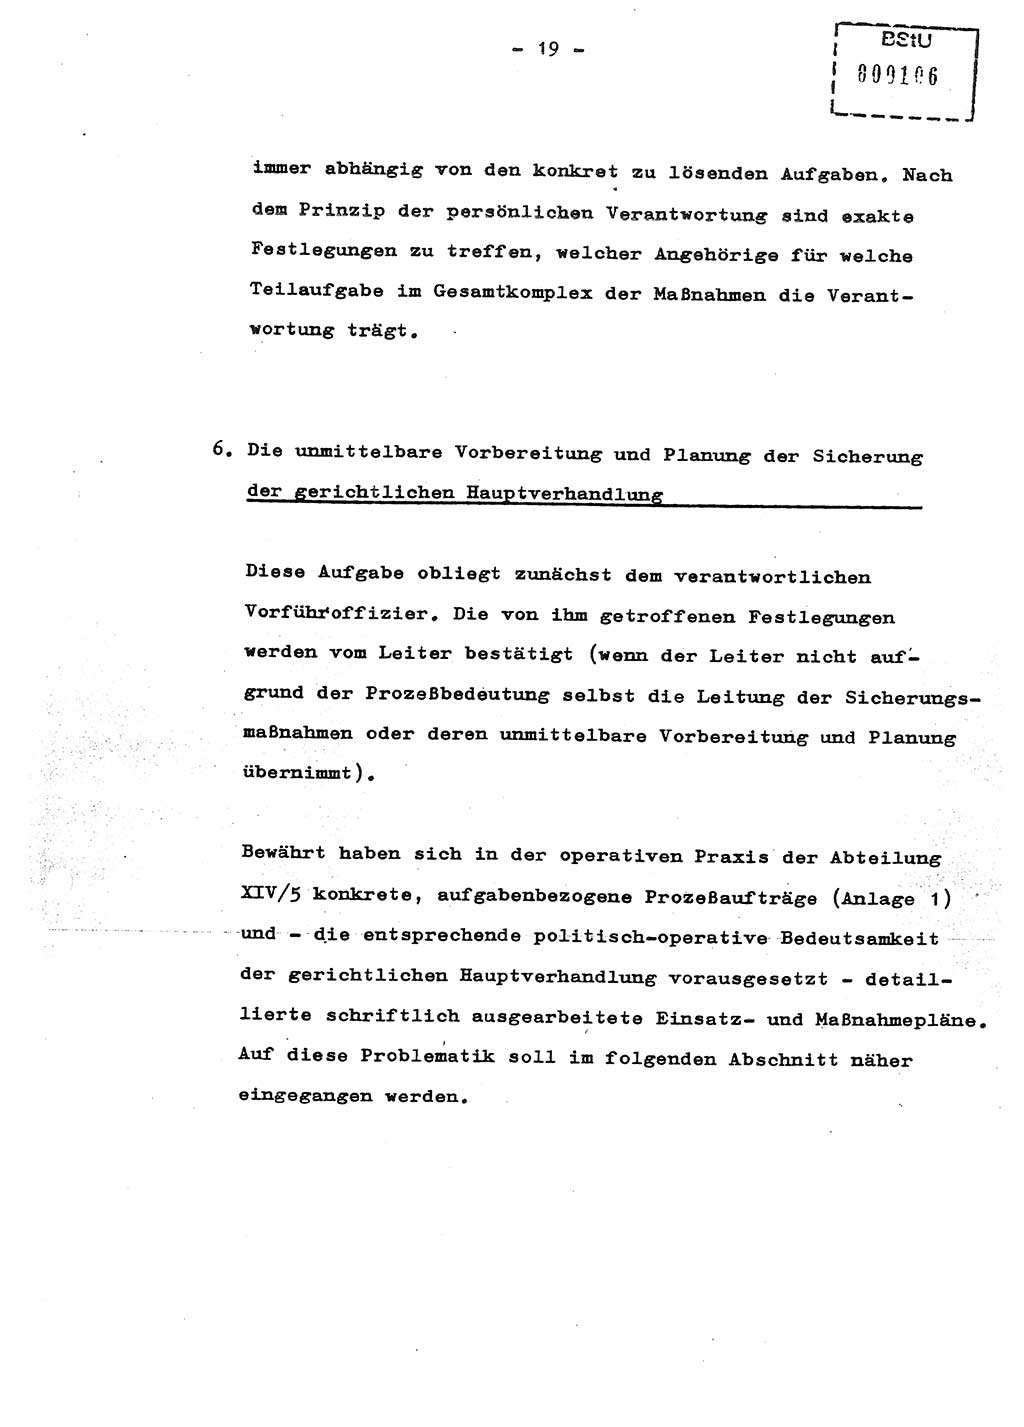 Schulungsmaterial Exemplar-Nr.: 8, Ministerium für Staatssicherheit [Deutsche Demokratische Republik (DDR)], Abteilung (Abt.) ⅩⅣ, Berlin 1987, Seite 19 (Sch.-Mat. Expl. 8 MfS DDR Abt. ⅩⅣ /87 1987, S. 19)